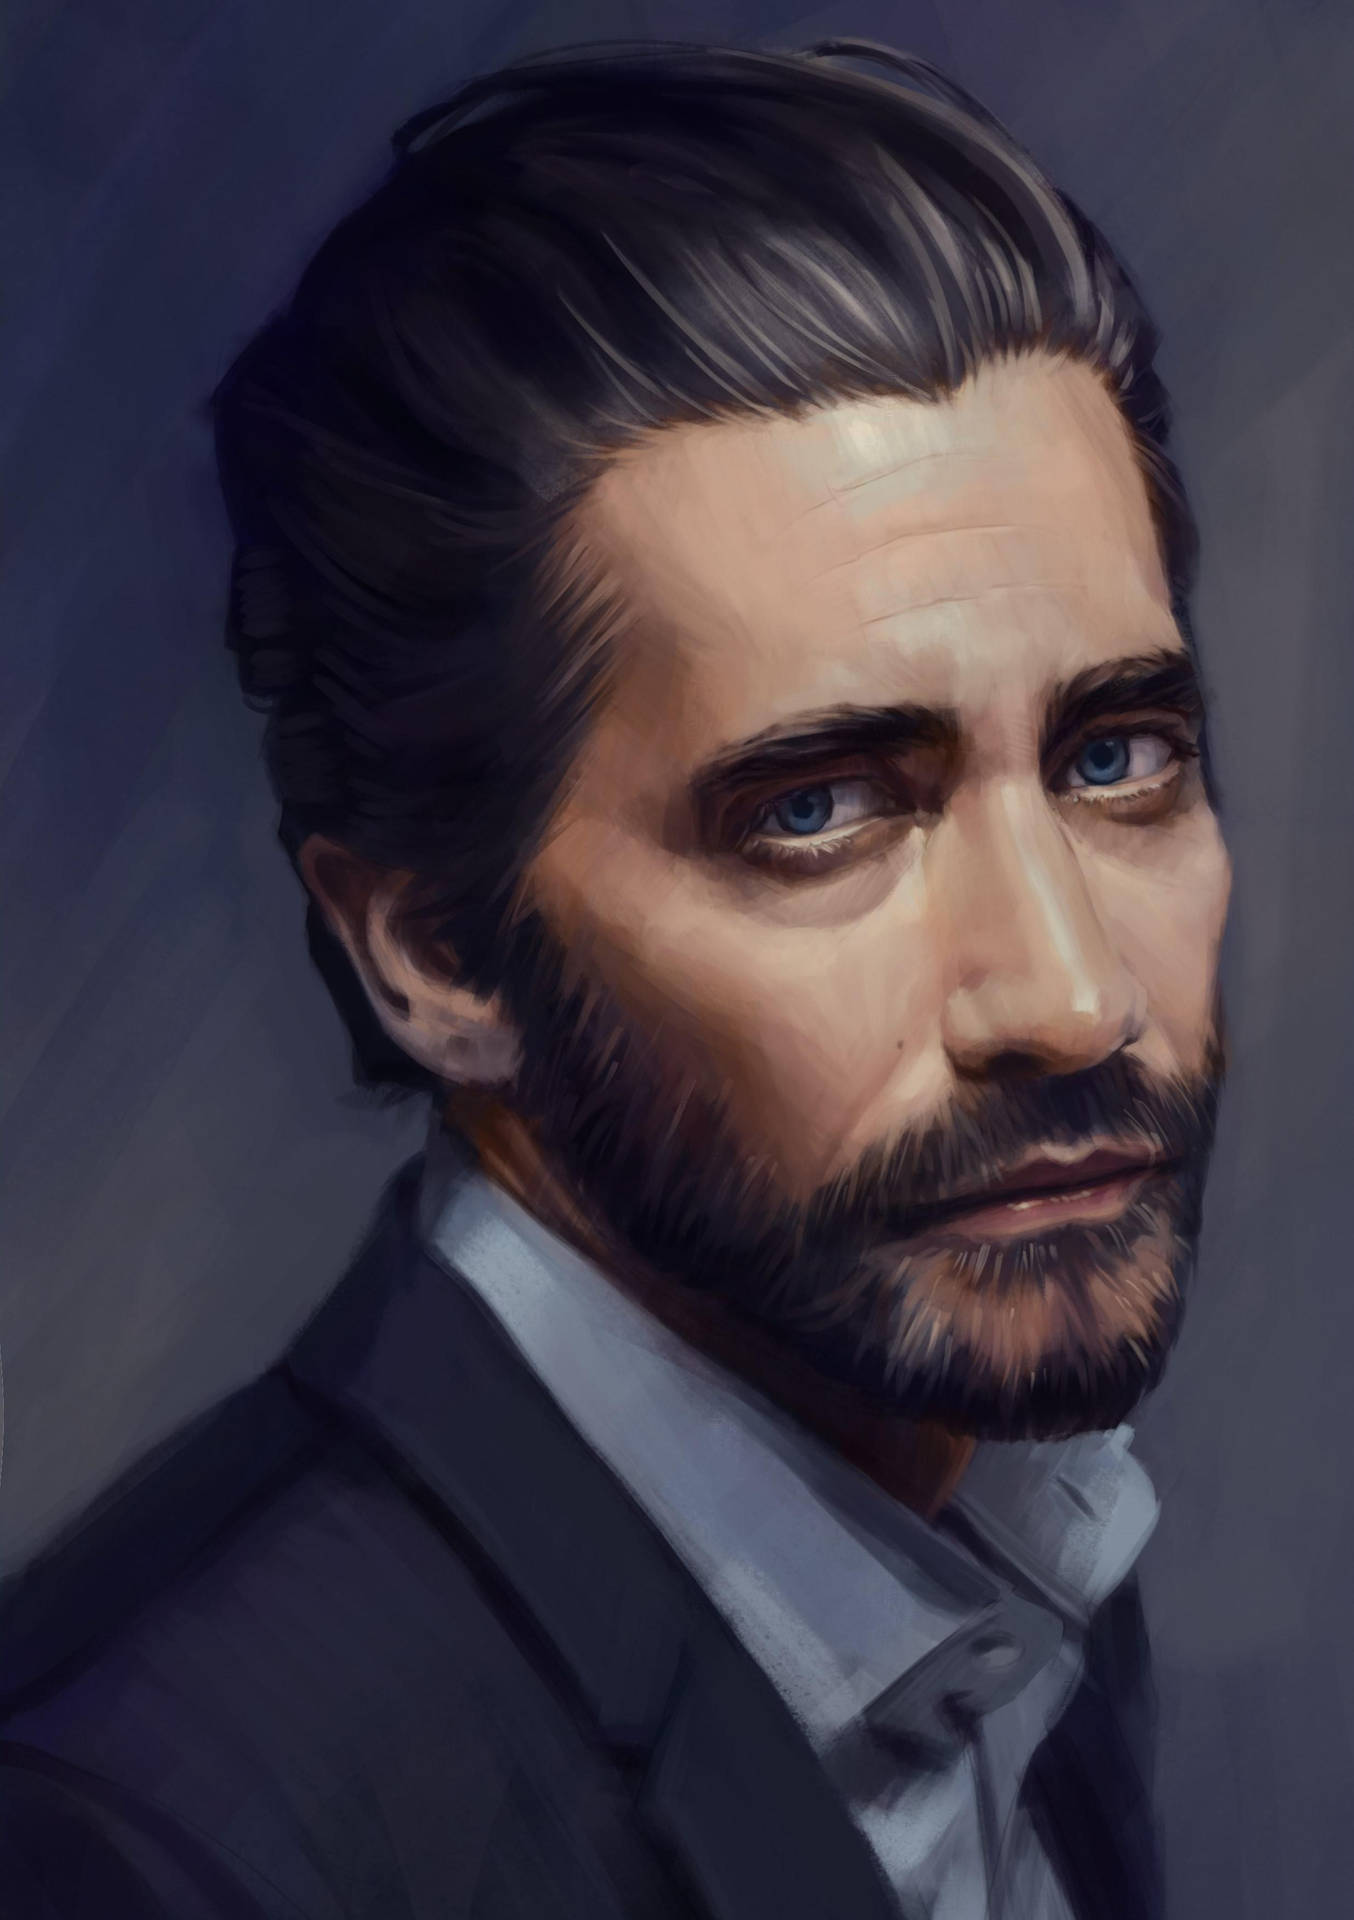 Jake Gyllenhaal Digital Painting